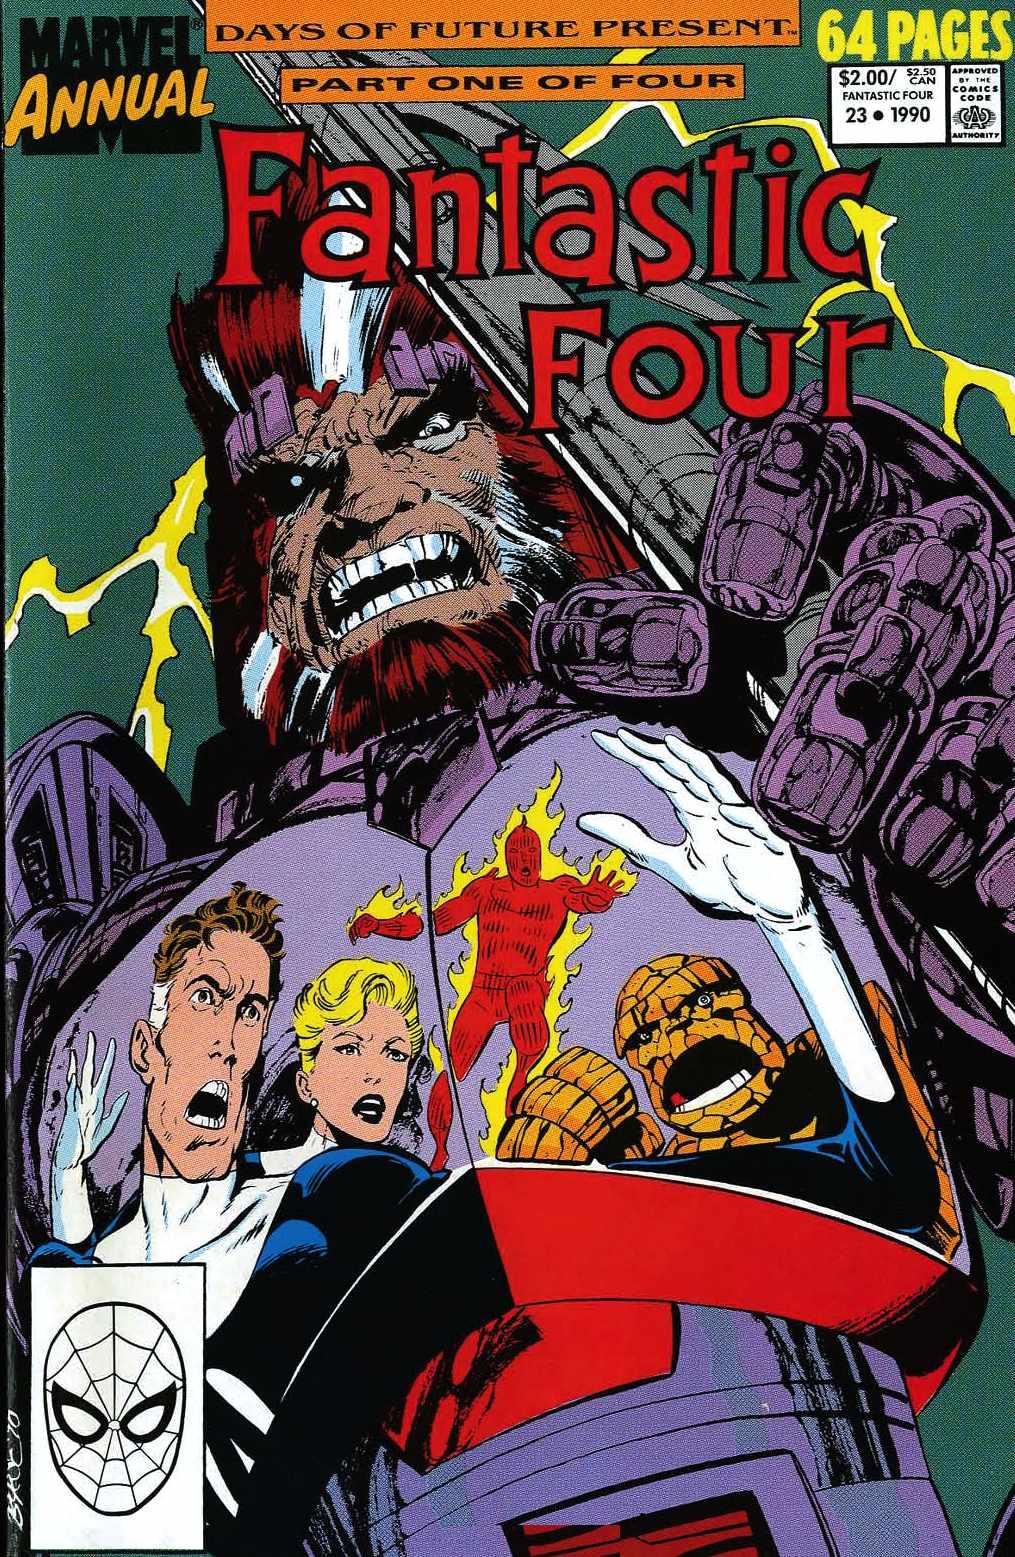 Fantastic Four Vol. 1 #23